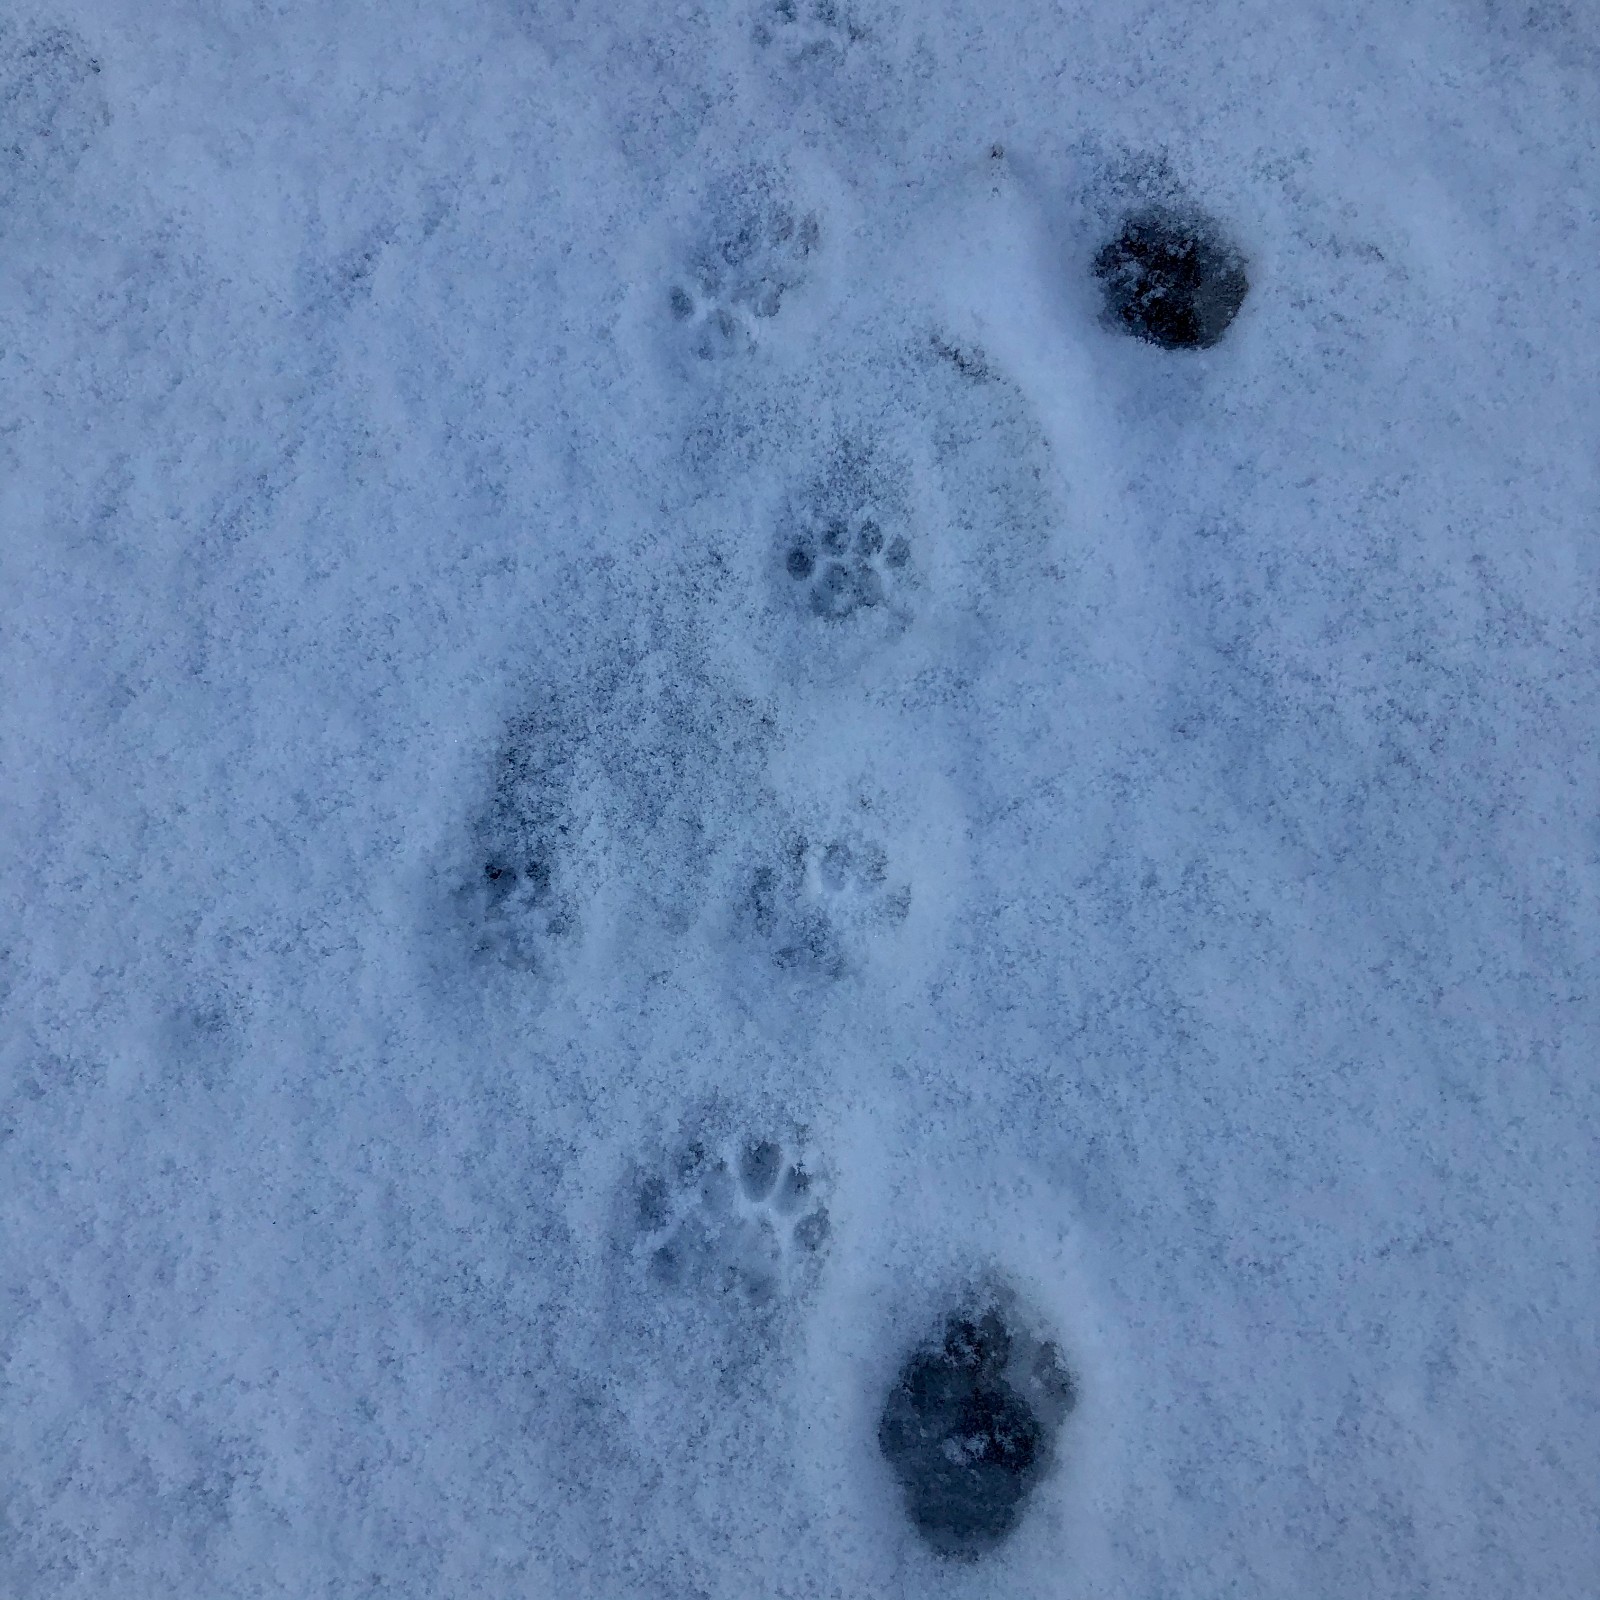 雪后初晴，留下了晴朗的天，憨憨的雪人，猫咪的脚印。 苏珊 山东大学本科生院